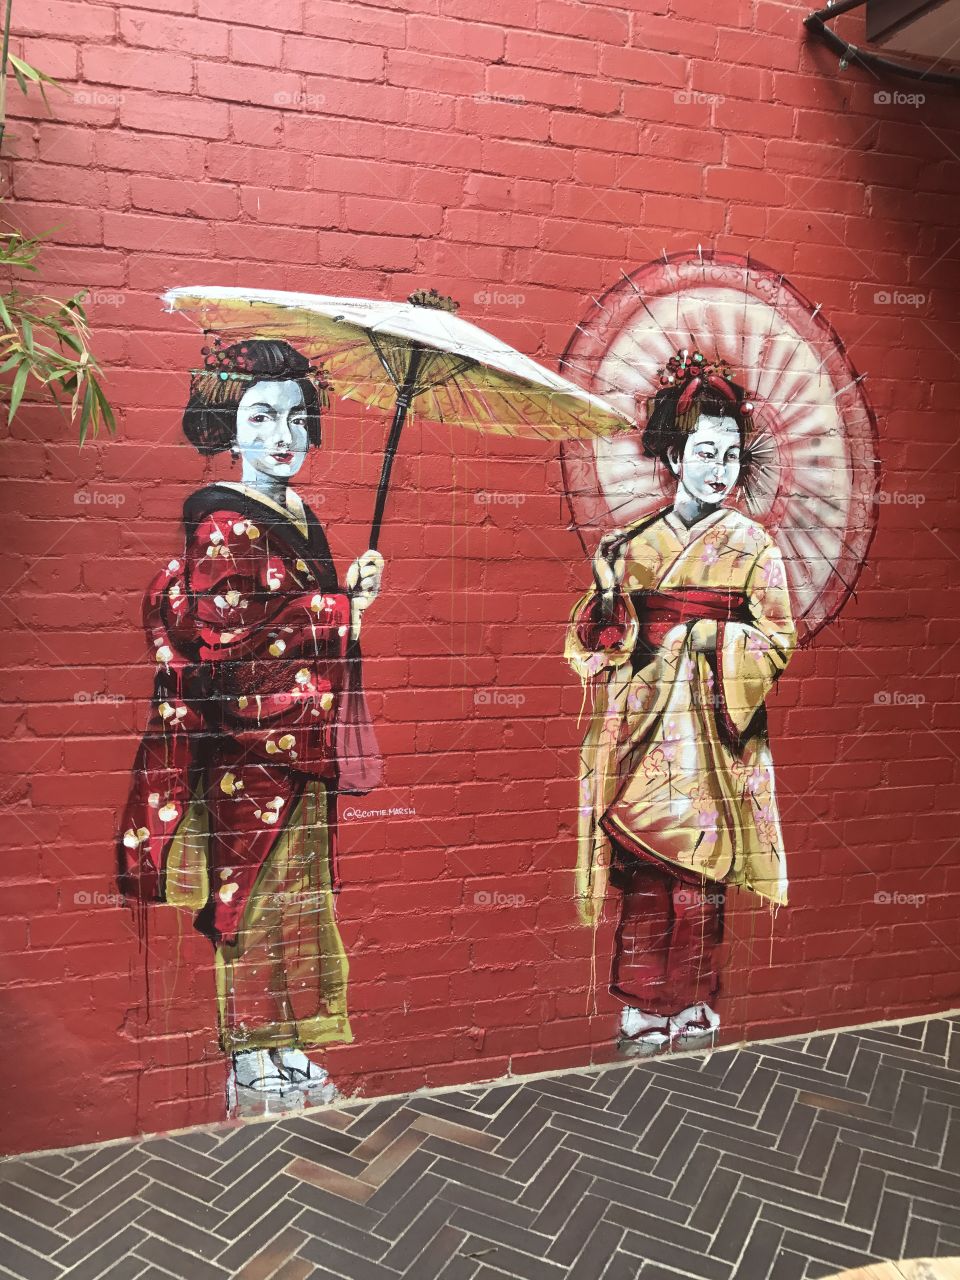 Street art in Sydney